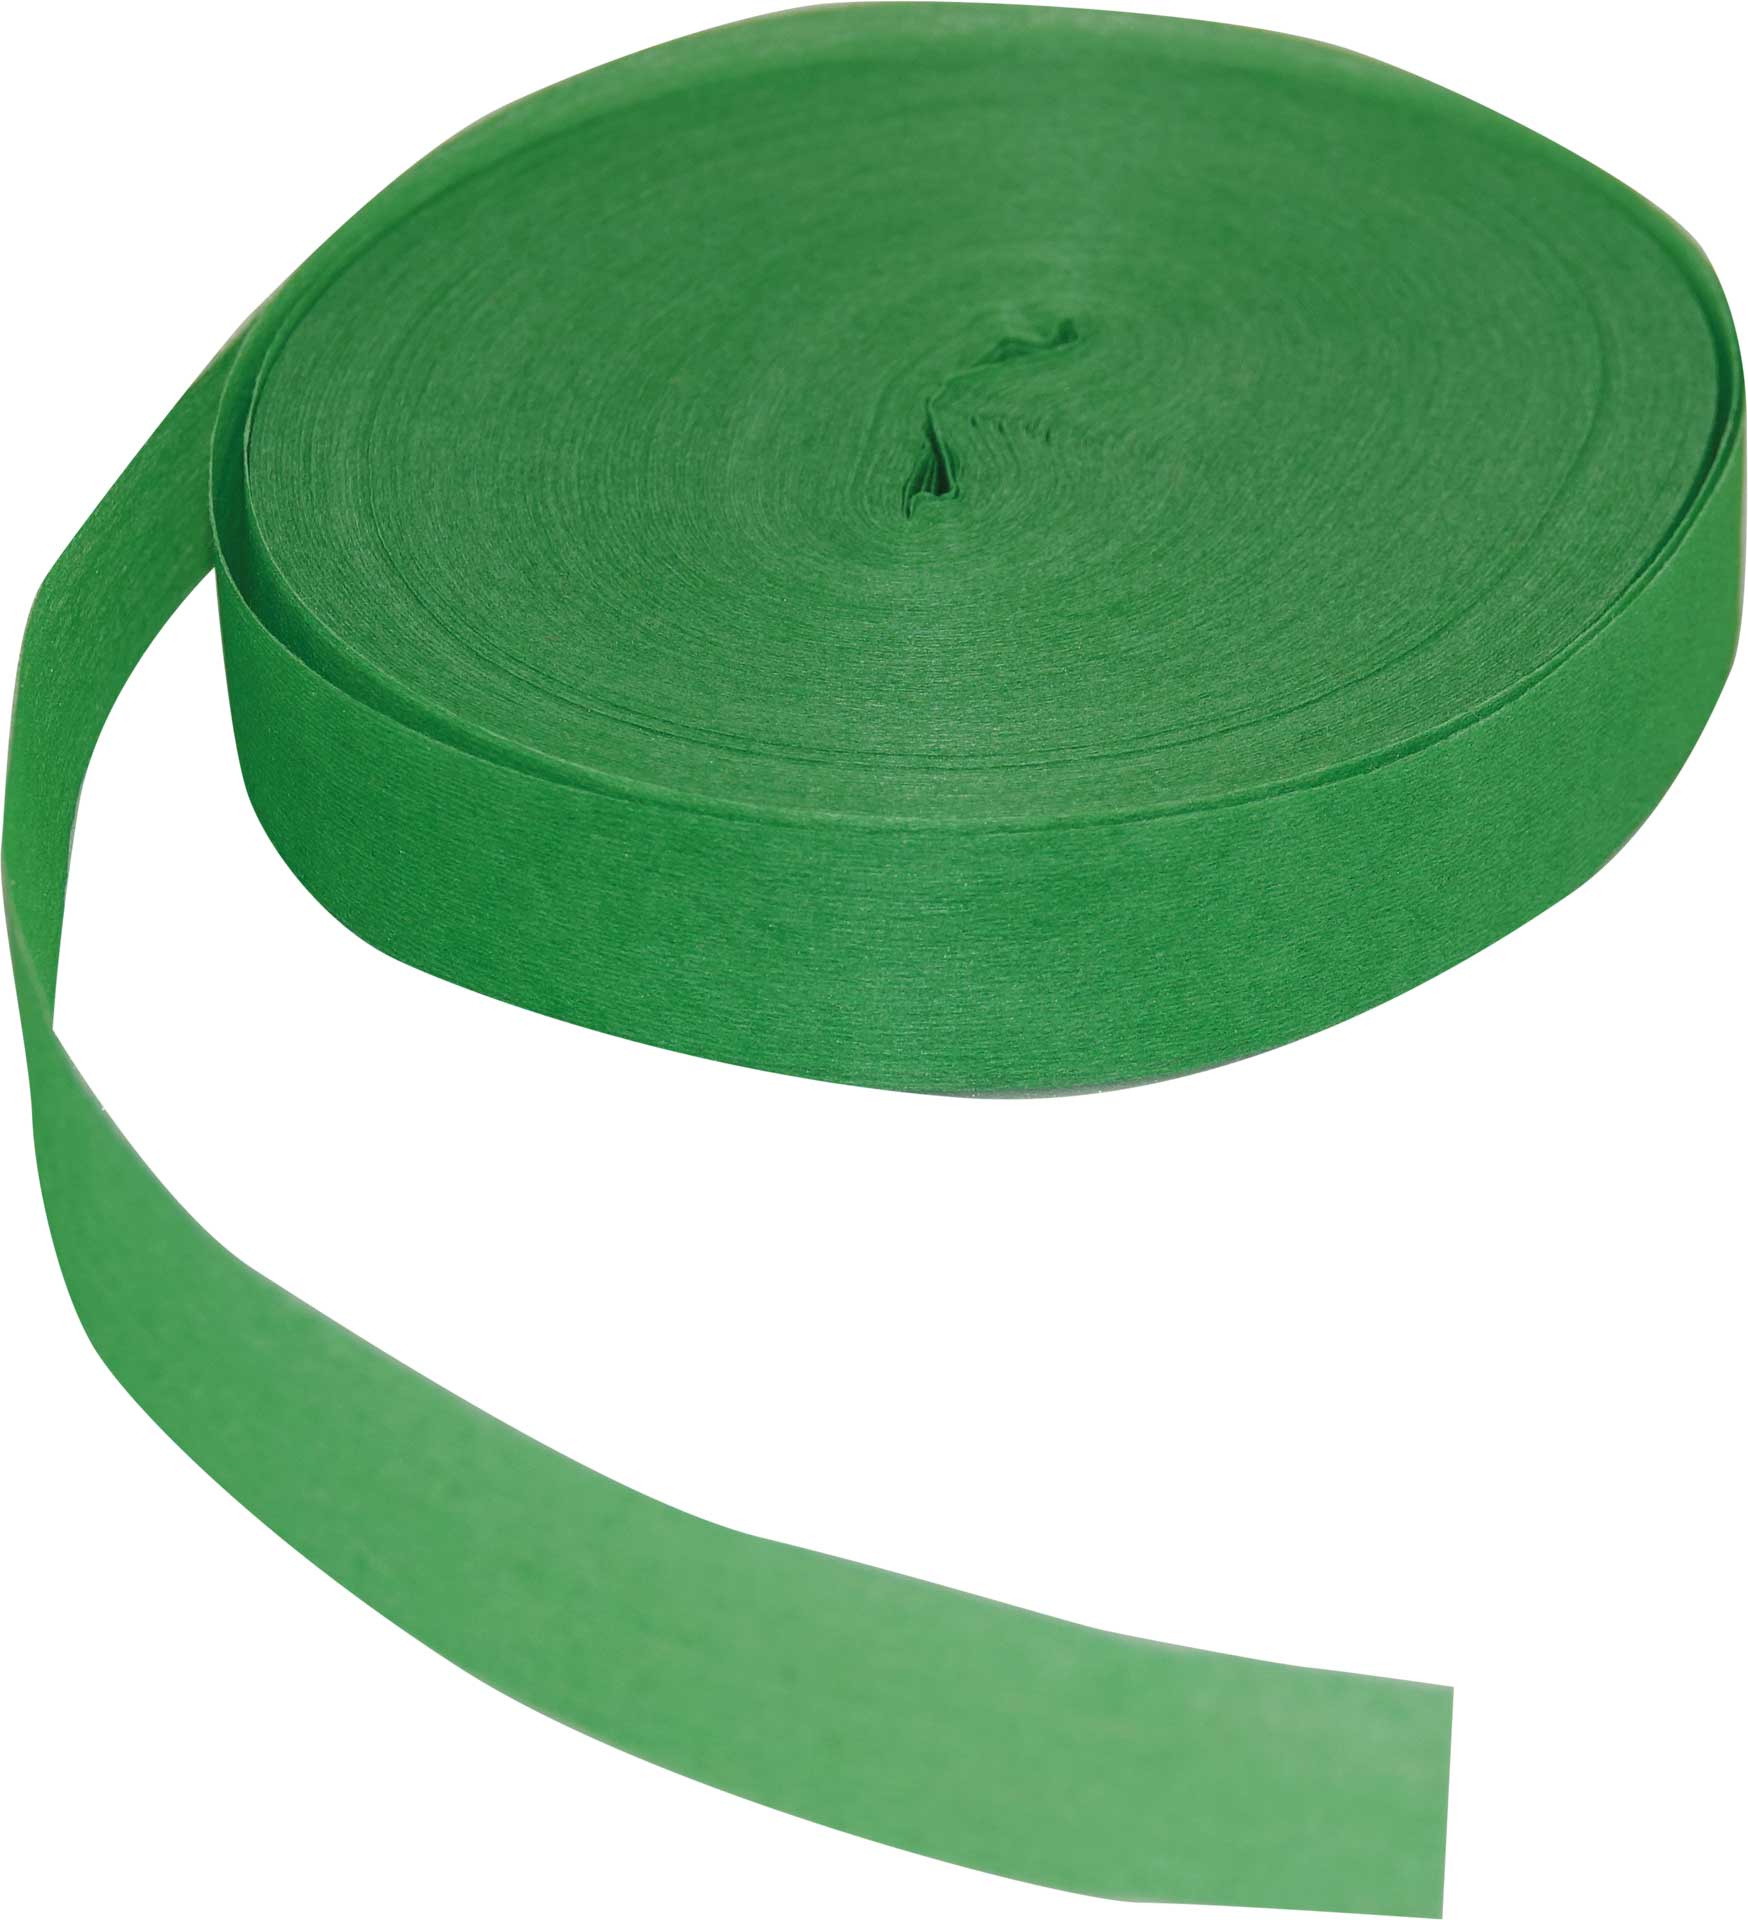 Robbe Modellsport Rubans pour Wingo 2 dans les couleurs vert